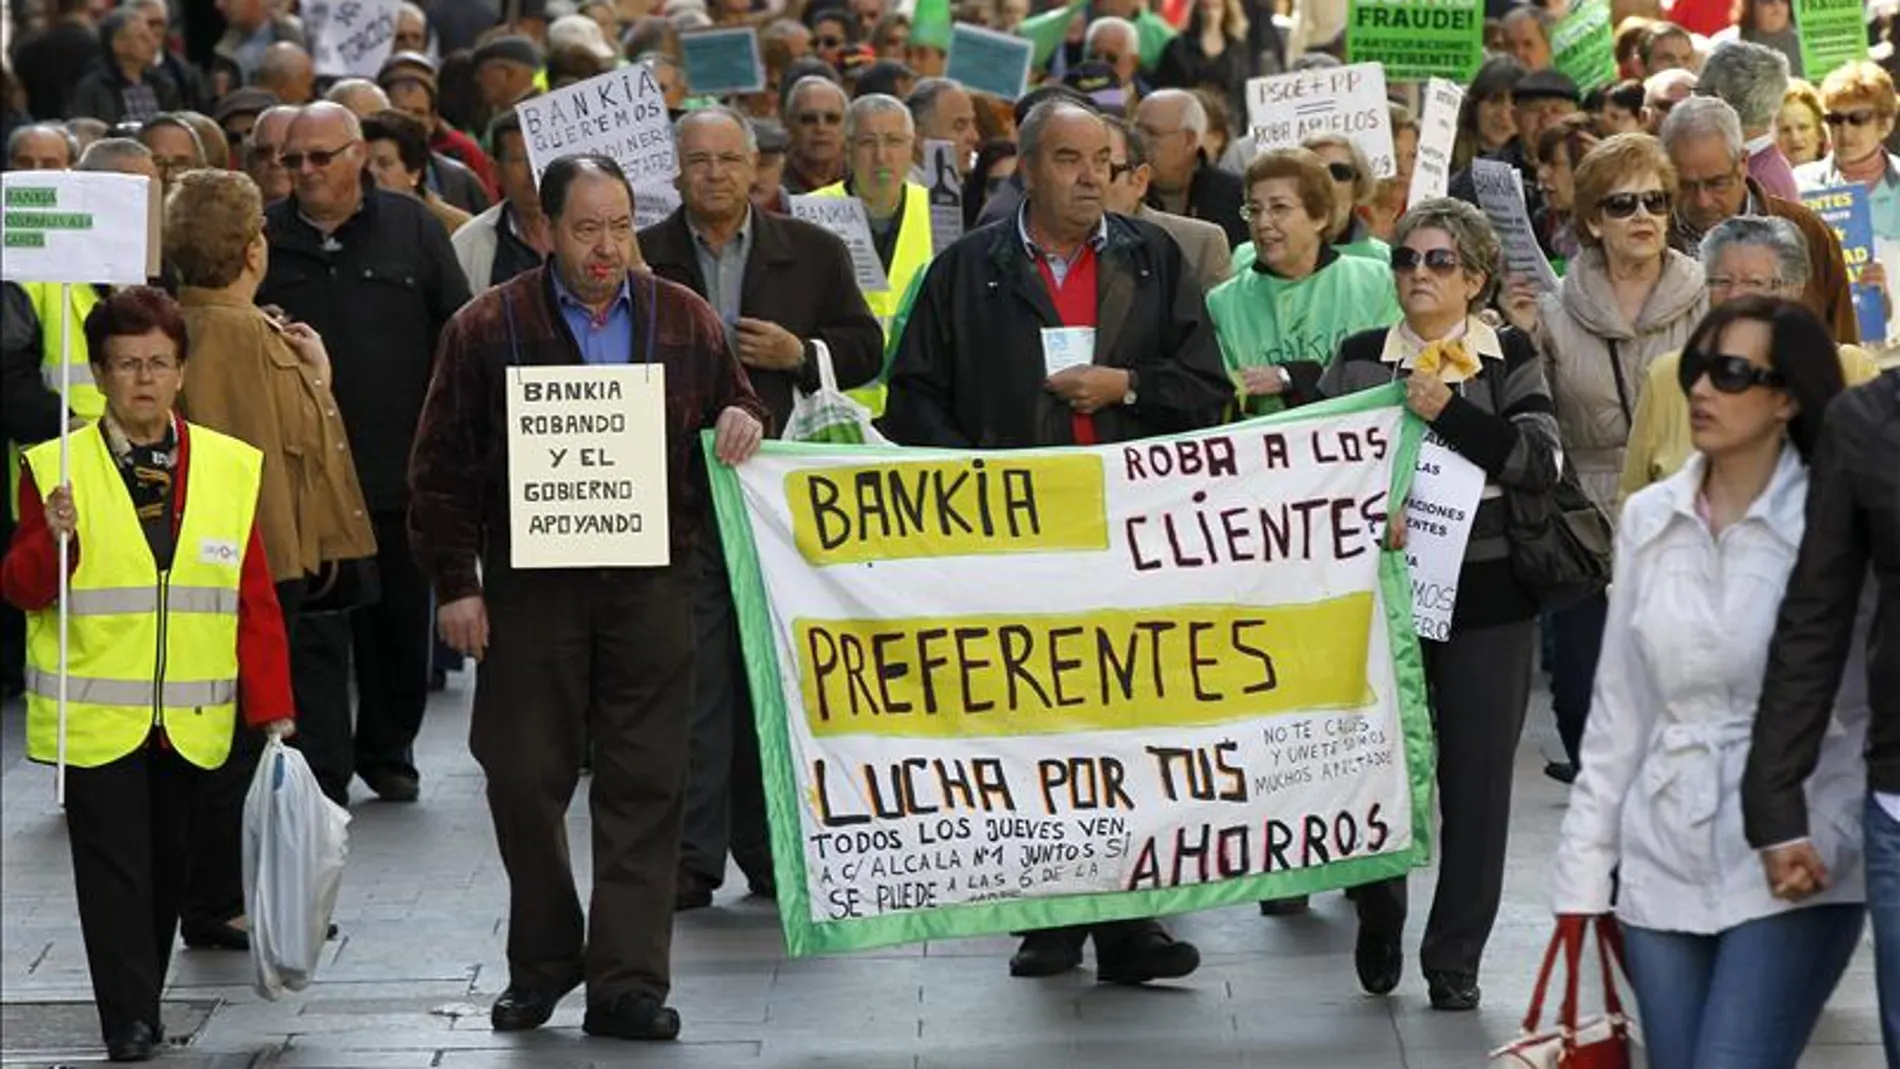 Preferentistas se manifiestan contra Bankia